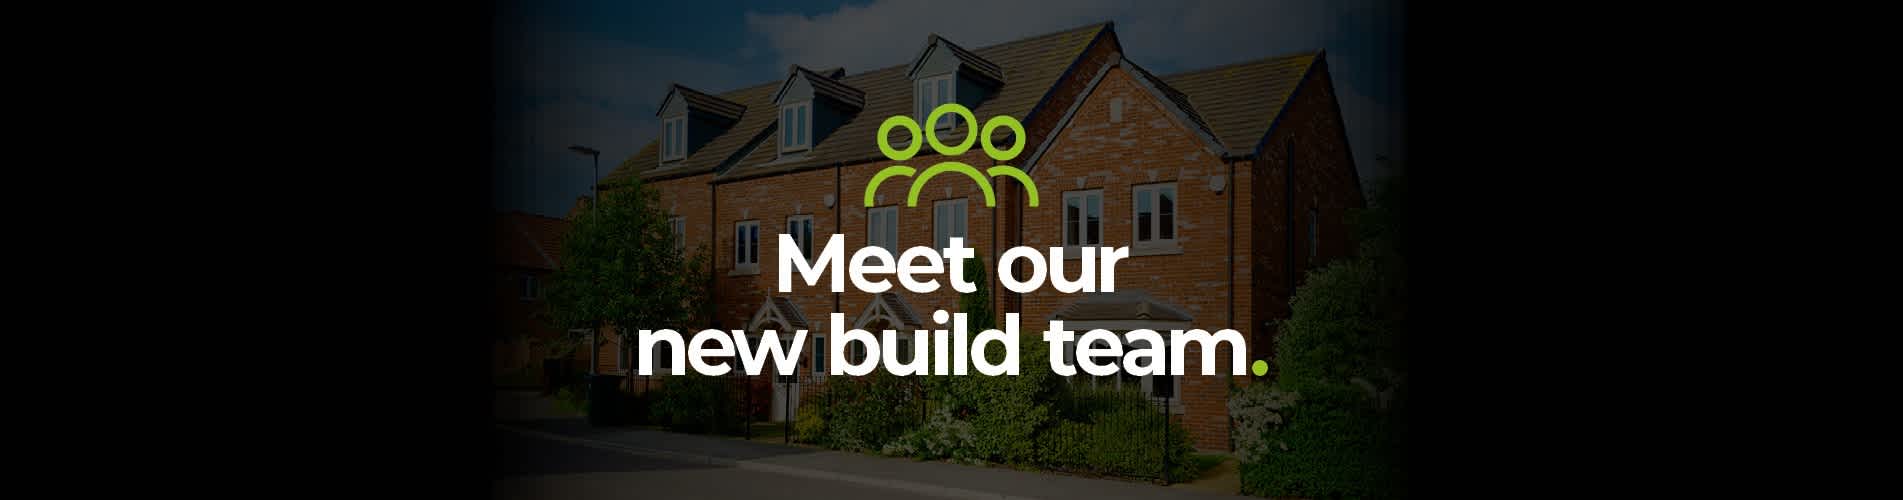 Meet Our New Build Team Blog Header